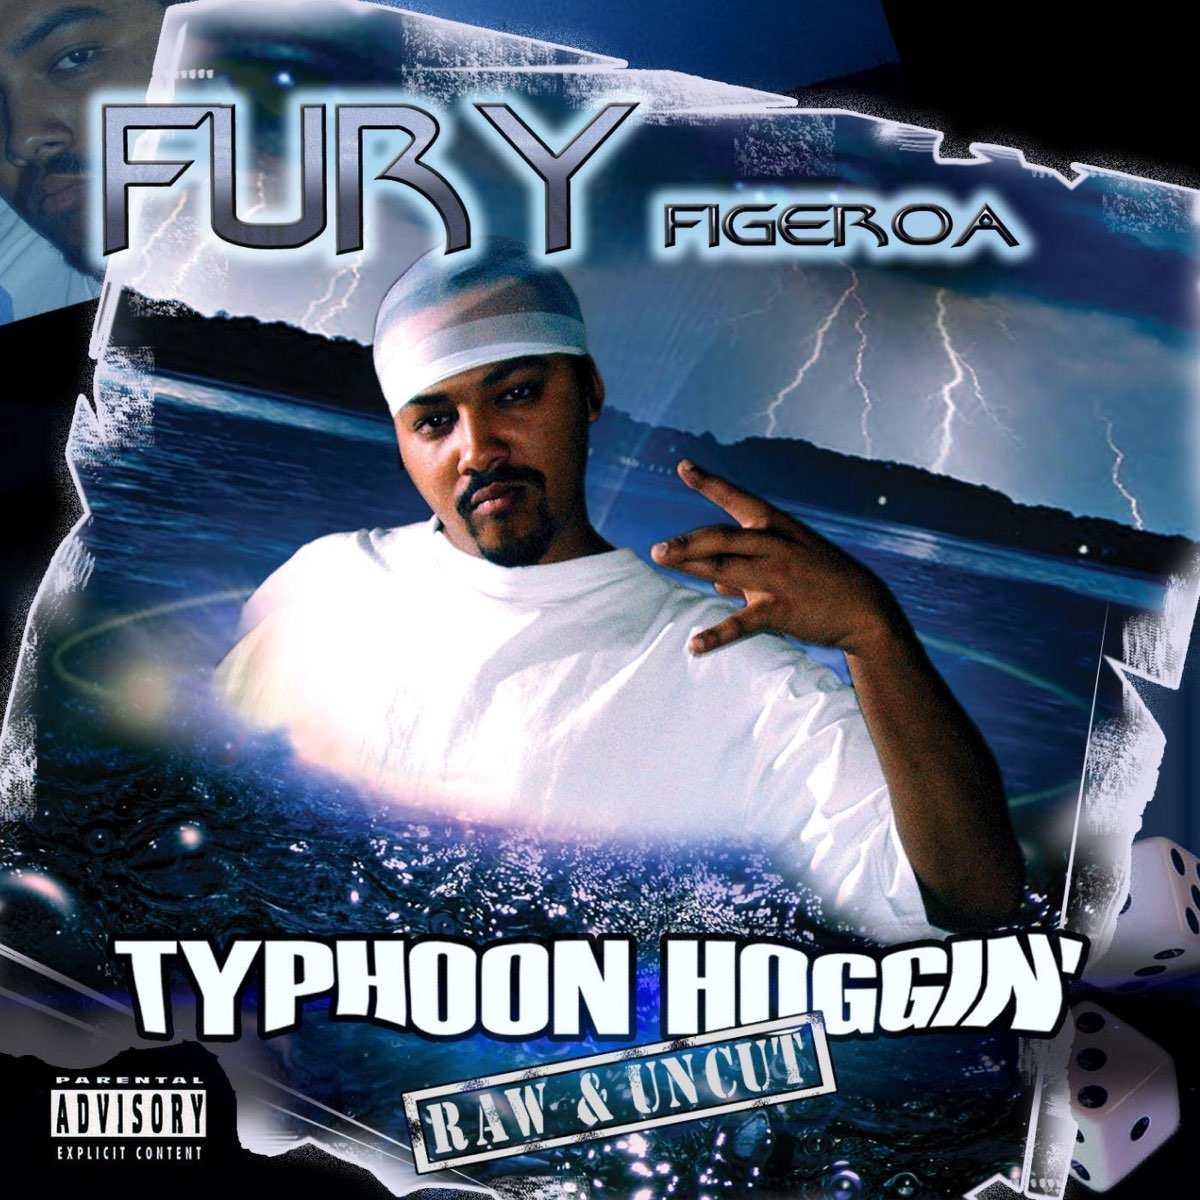 Fury Figeroa - Typhoon Hoggin' (Raw & Uncut)